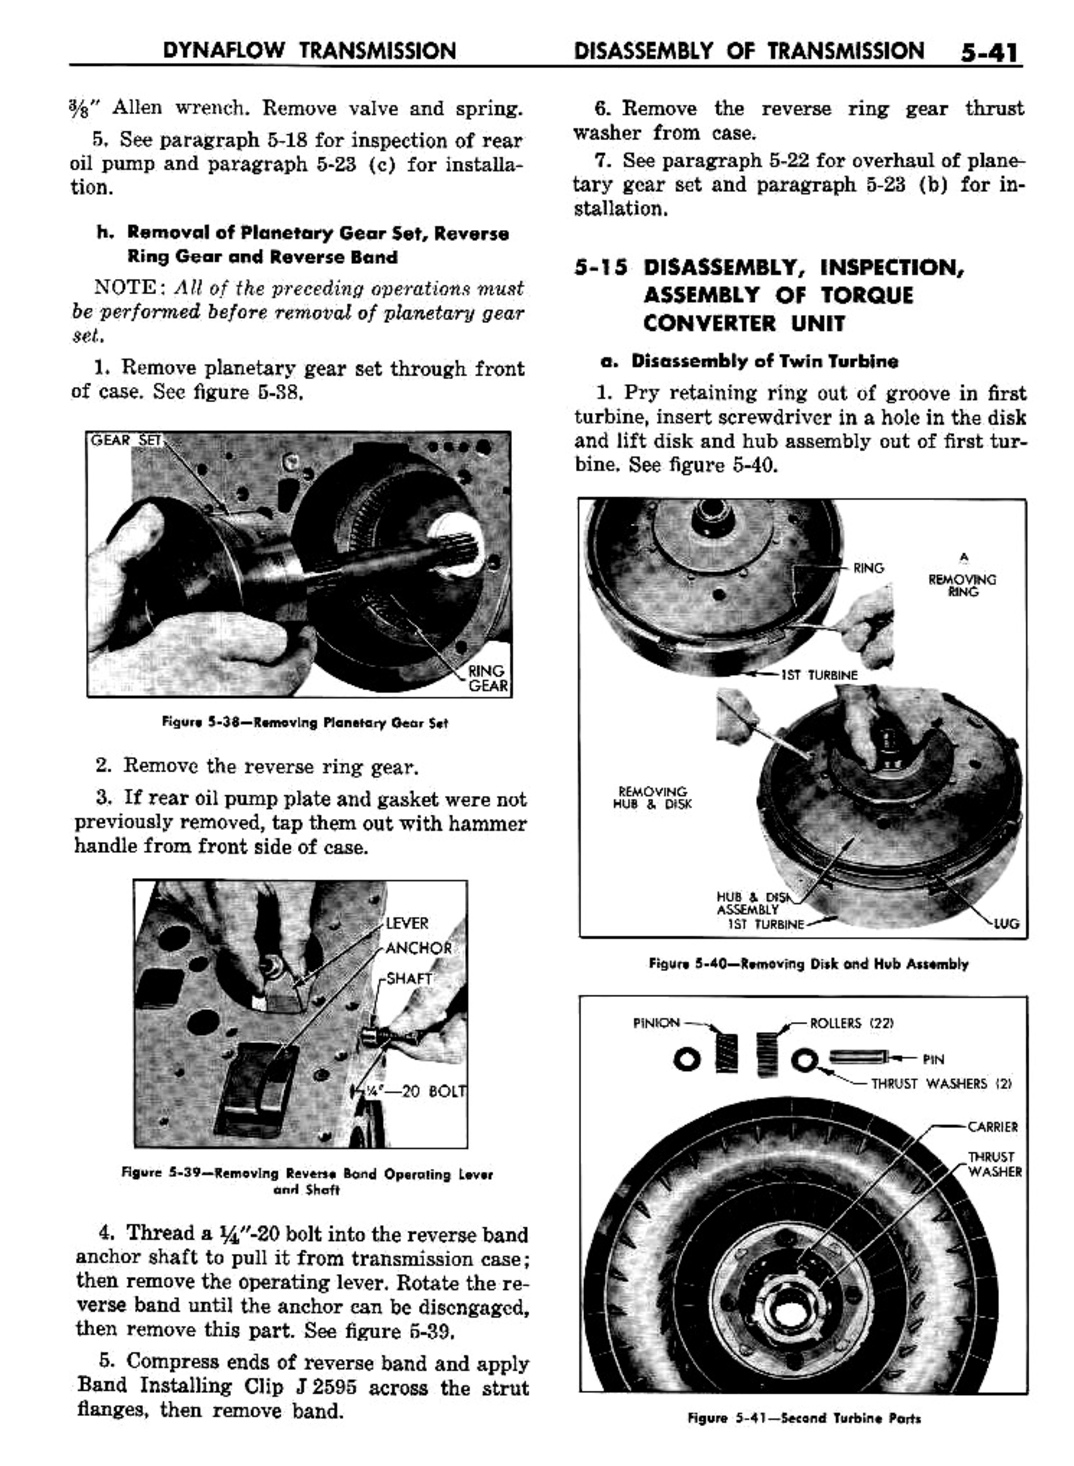 n_06 1957 Buick Shop Manual - Dynaflow-041-041.jpg